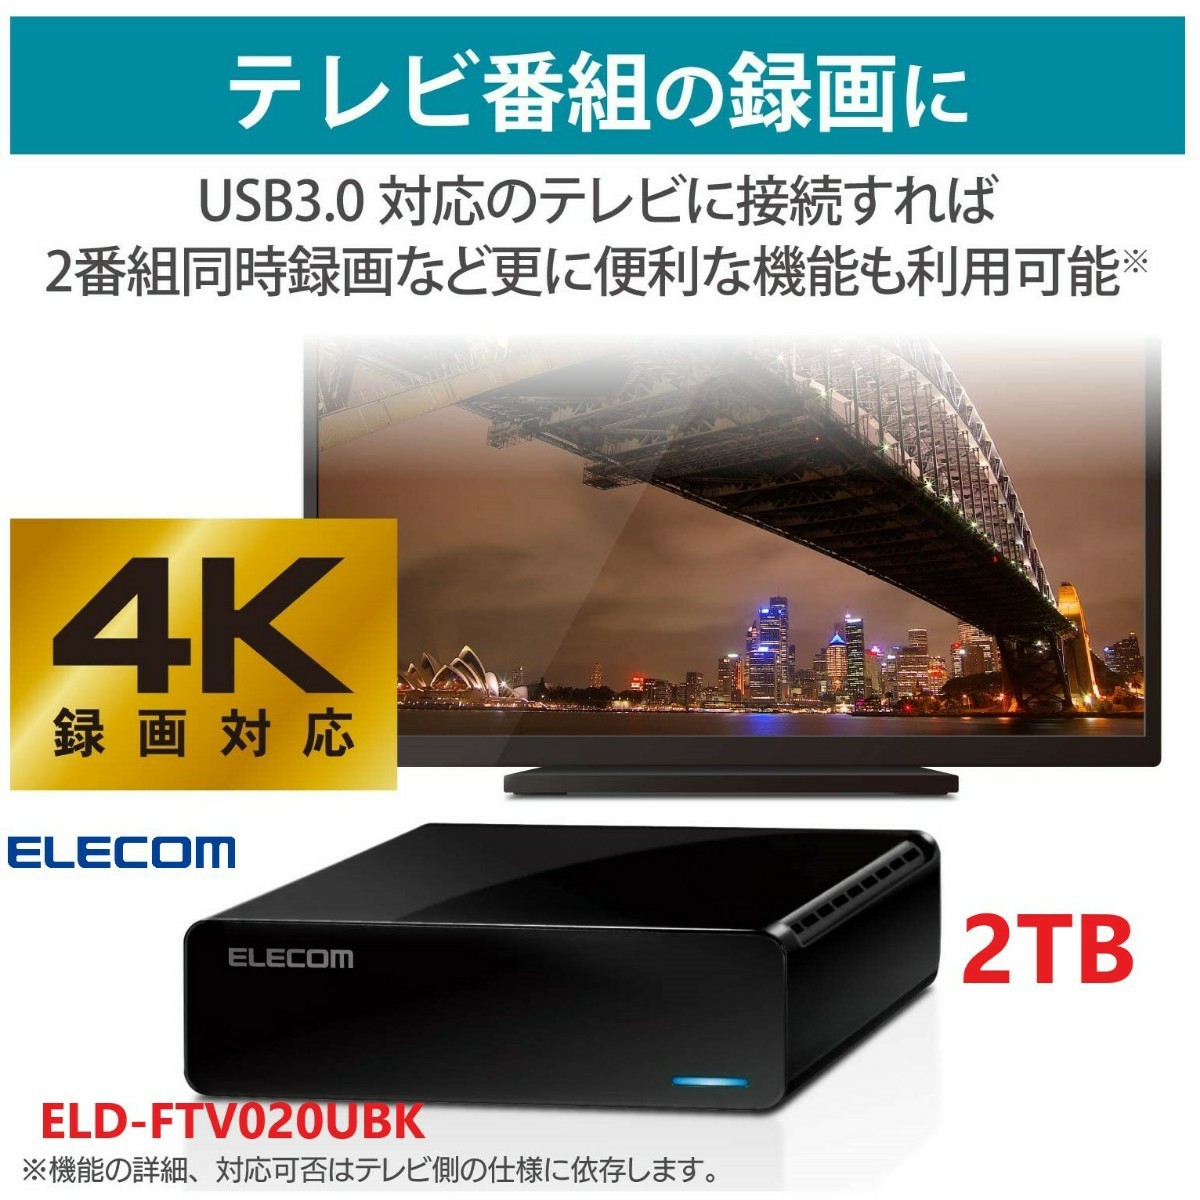 外付けハードディスク 2TB USB3.2(Gen1) テレビ録画/パソコン対応 静音ファンレス設計 ELD-FTV020UBK